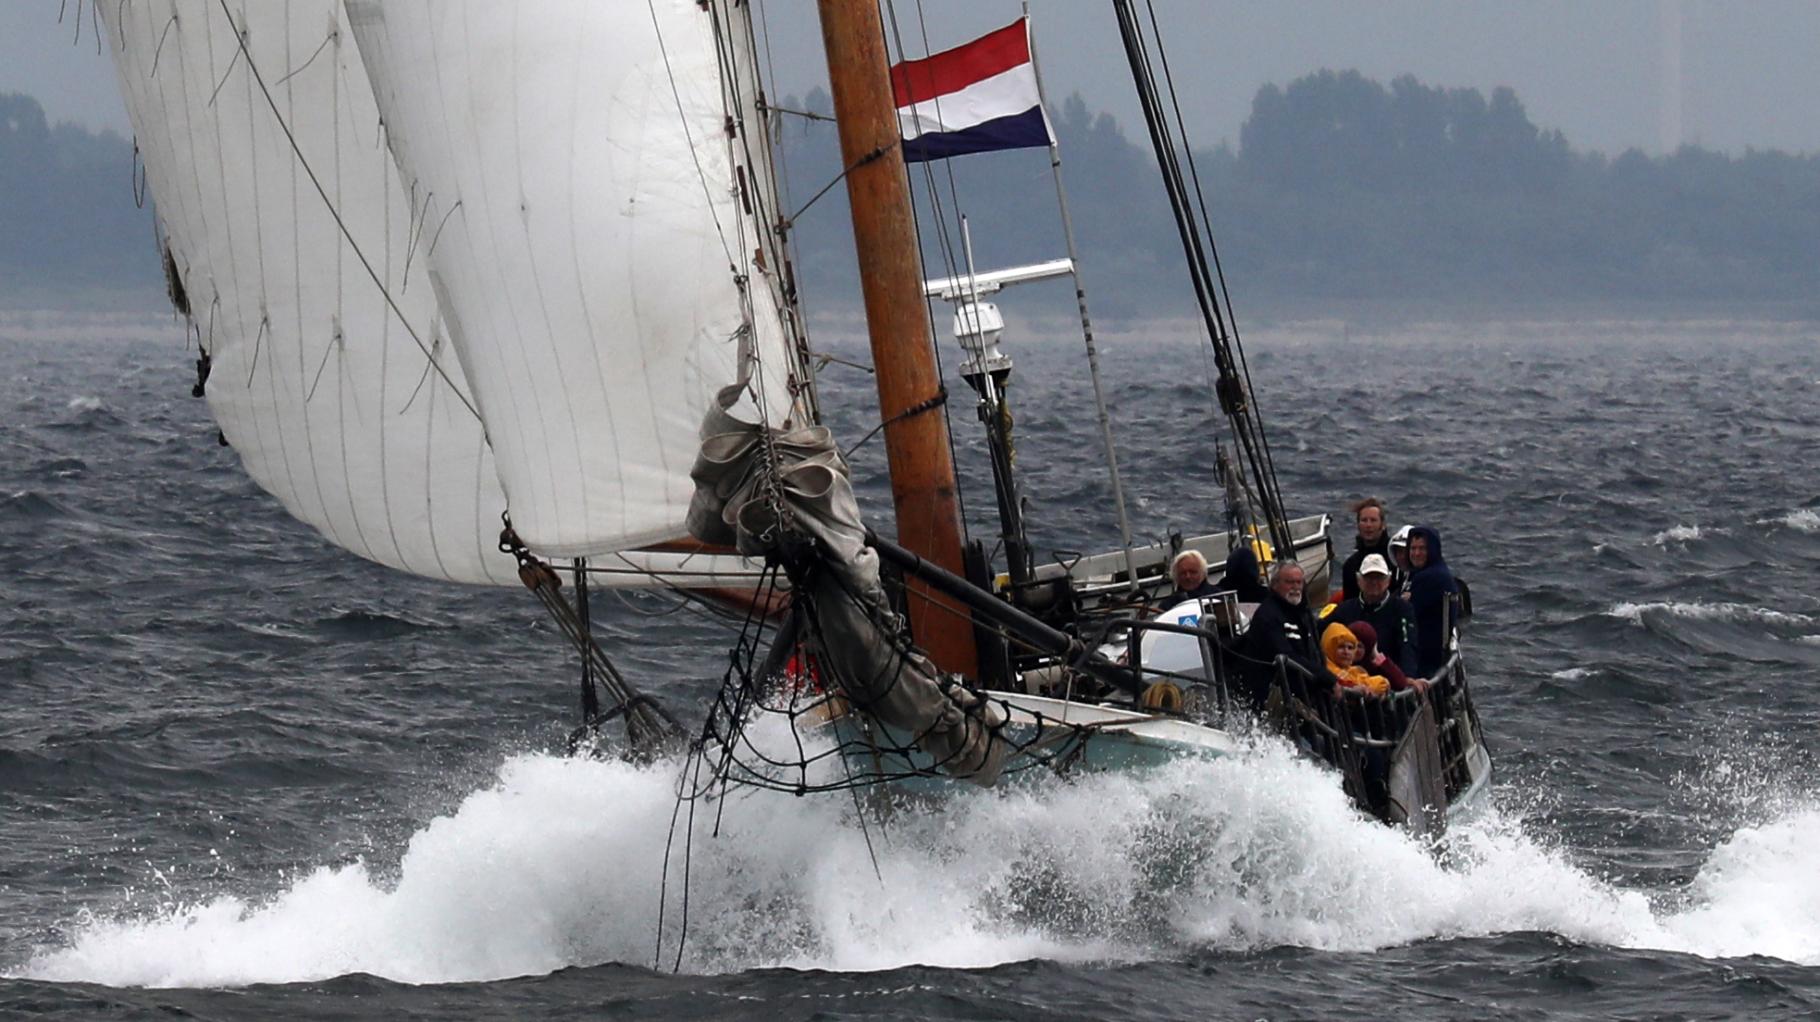 Sturm vor der Hanse Sail: Haikutter-Regatta abgesagt